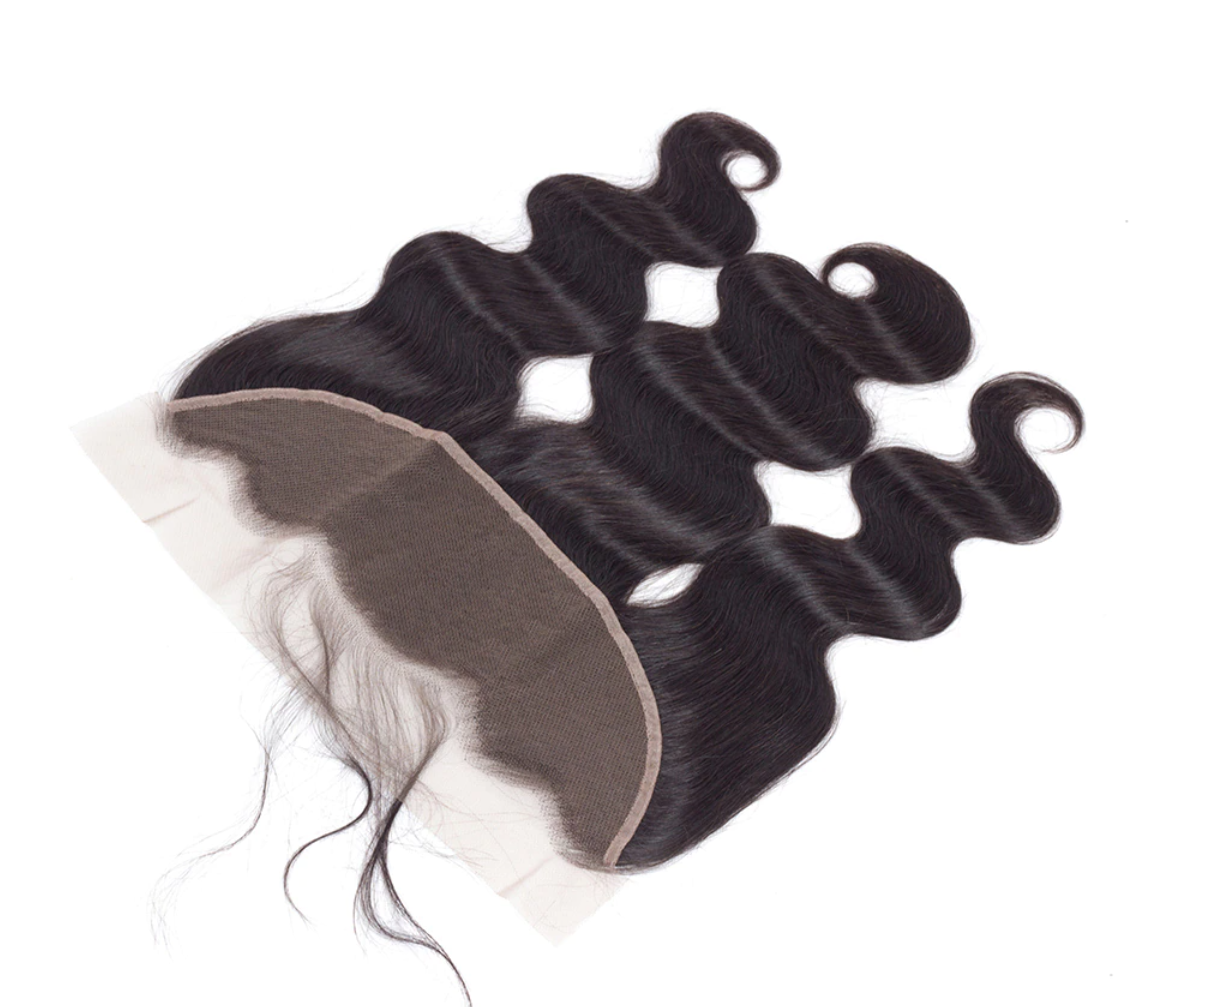 #bodywave #loosewave #deepwave #brazilianhair #peruvianhair #malaysianhair #indianhair #humanhair #virginhair #deepcurly #laceclosure #closure #kinkycurly #straighthair #fulllacewig #unprocessedhair #hairextension #straight #remyhair #bundles #hairweft #hairweave #naturalwave #bundledeals #silkclosure #wig #hairsupplier #hairextensions #wholesalehair #bodywavefrontal